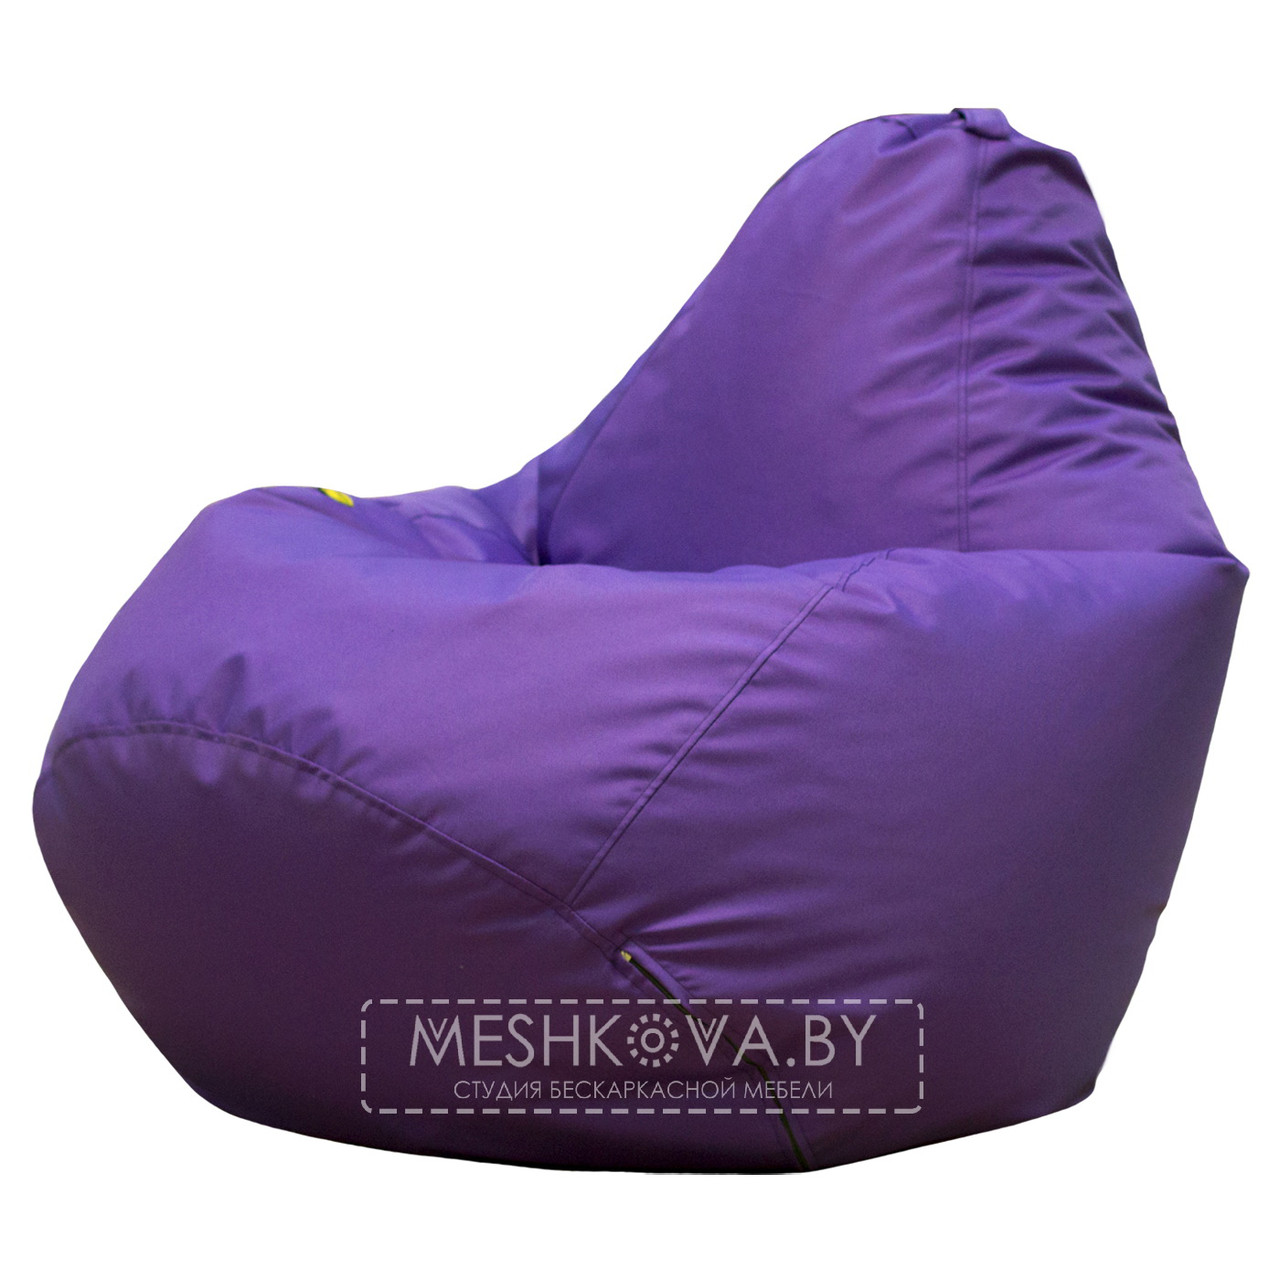 Кресло-груша Стронг Фиолетовая - 2XL, фото 1